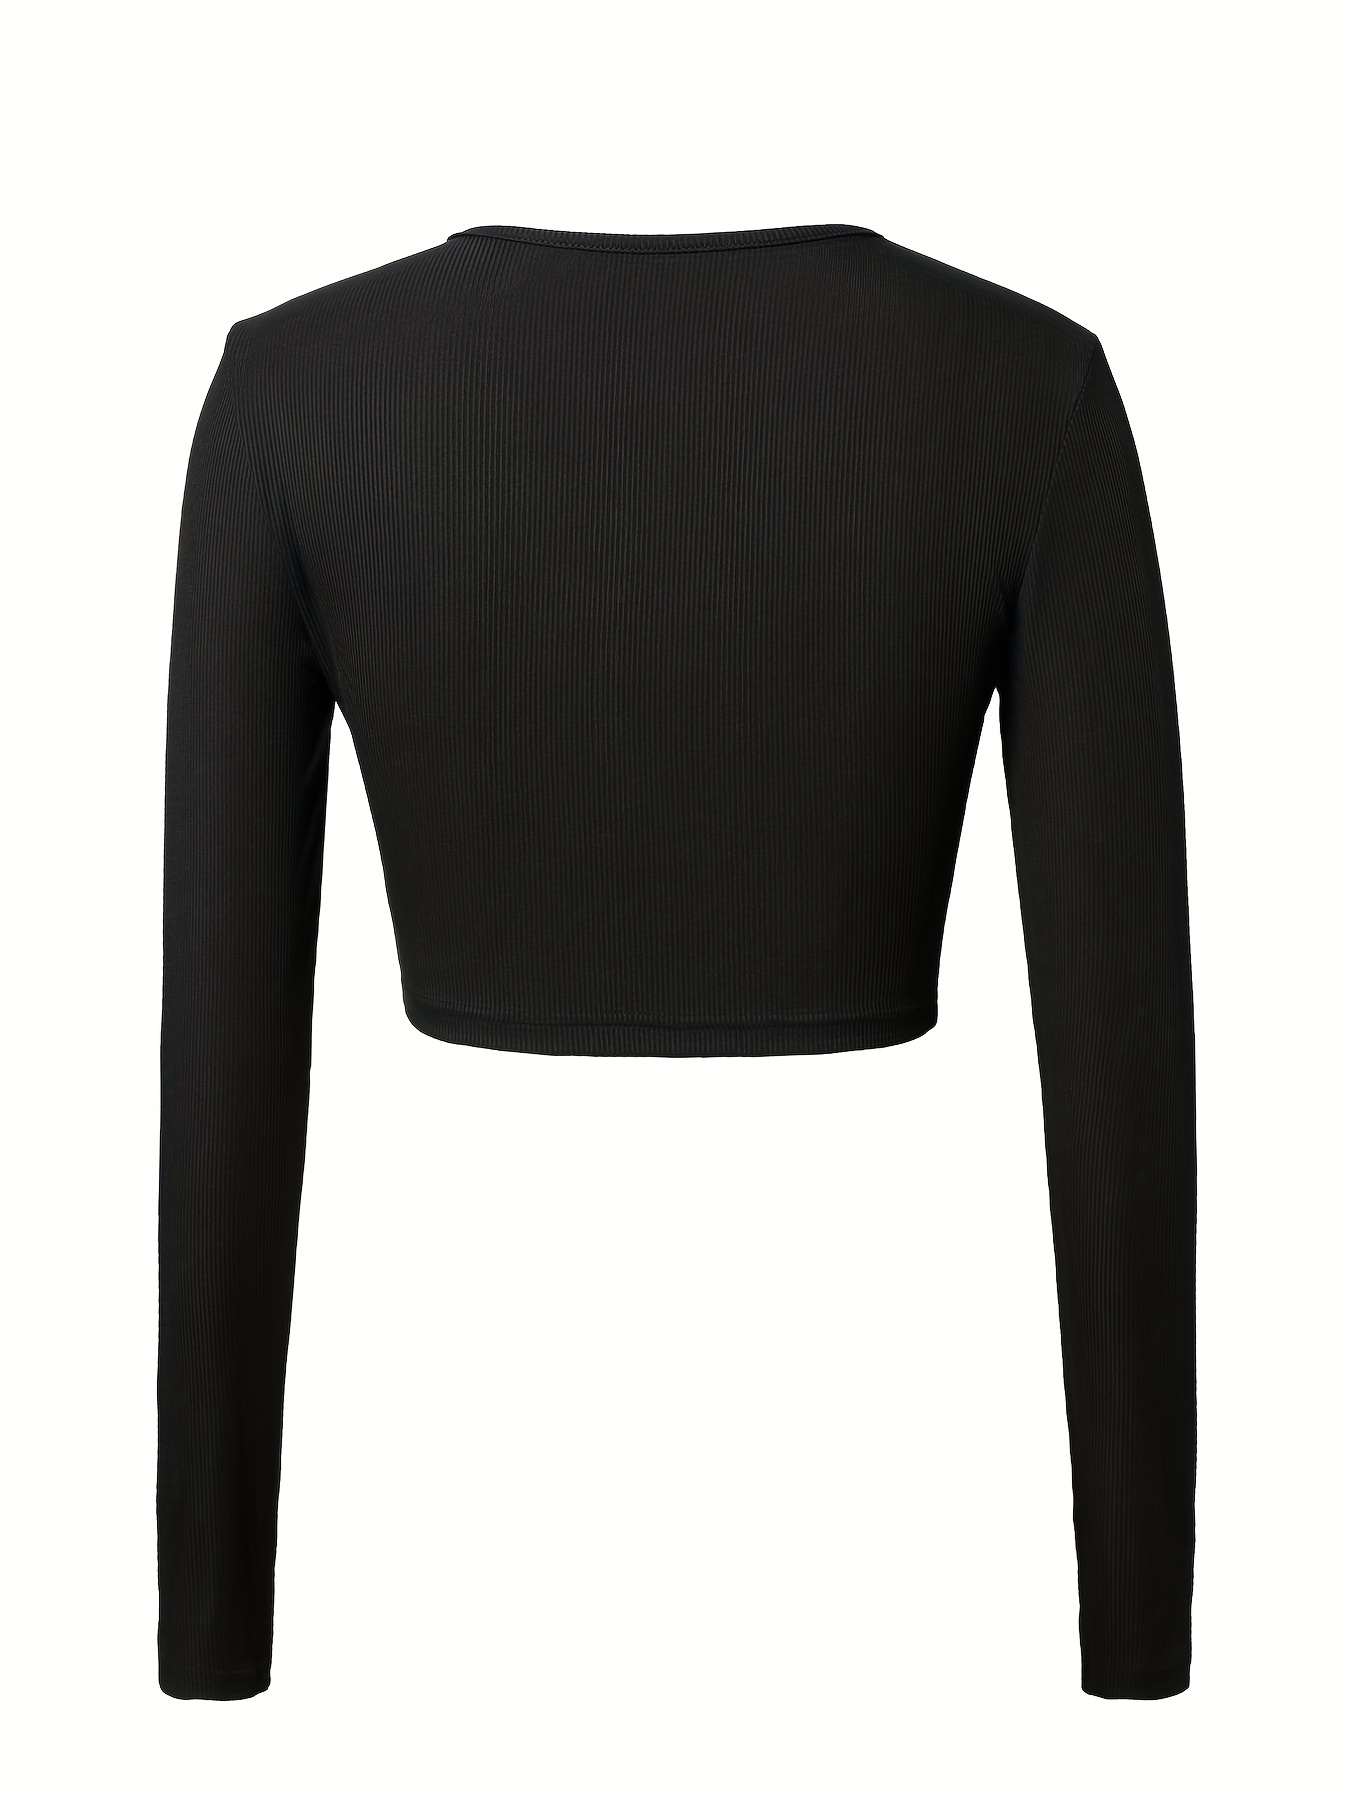 Women Y2k Long Sleeve Slim Cropped T-Shirt Harajuku Aesthetic Retro Tee  Tops Autumn Streetwear, Black, S price in UAE,  UAE